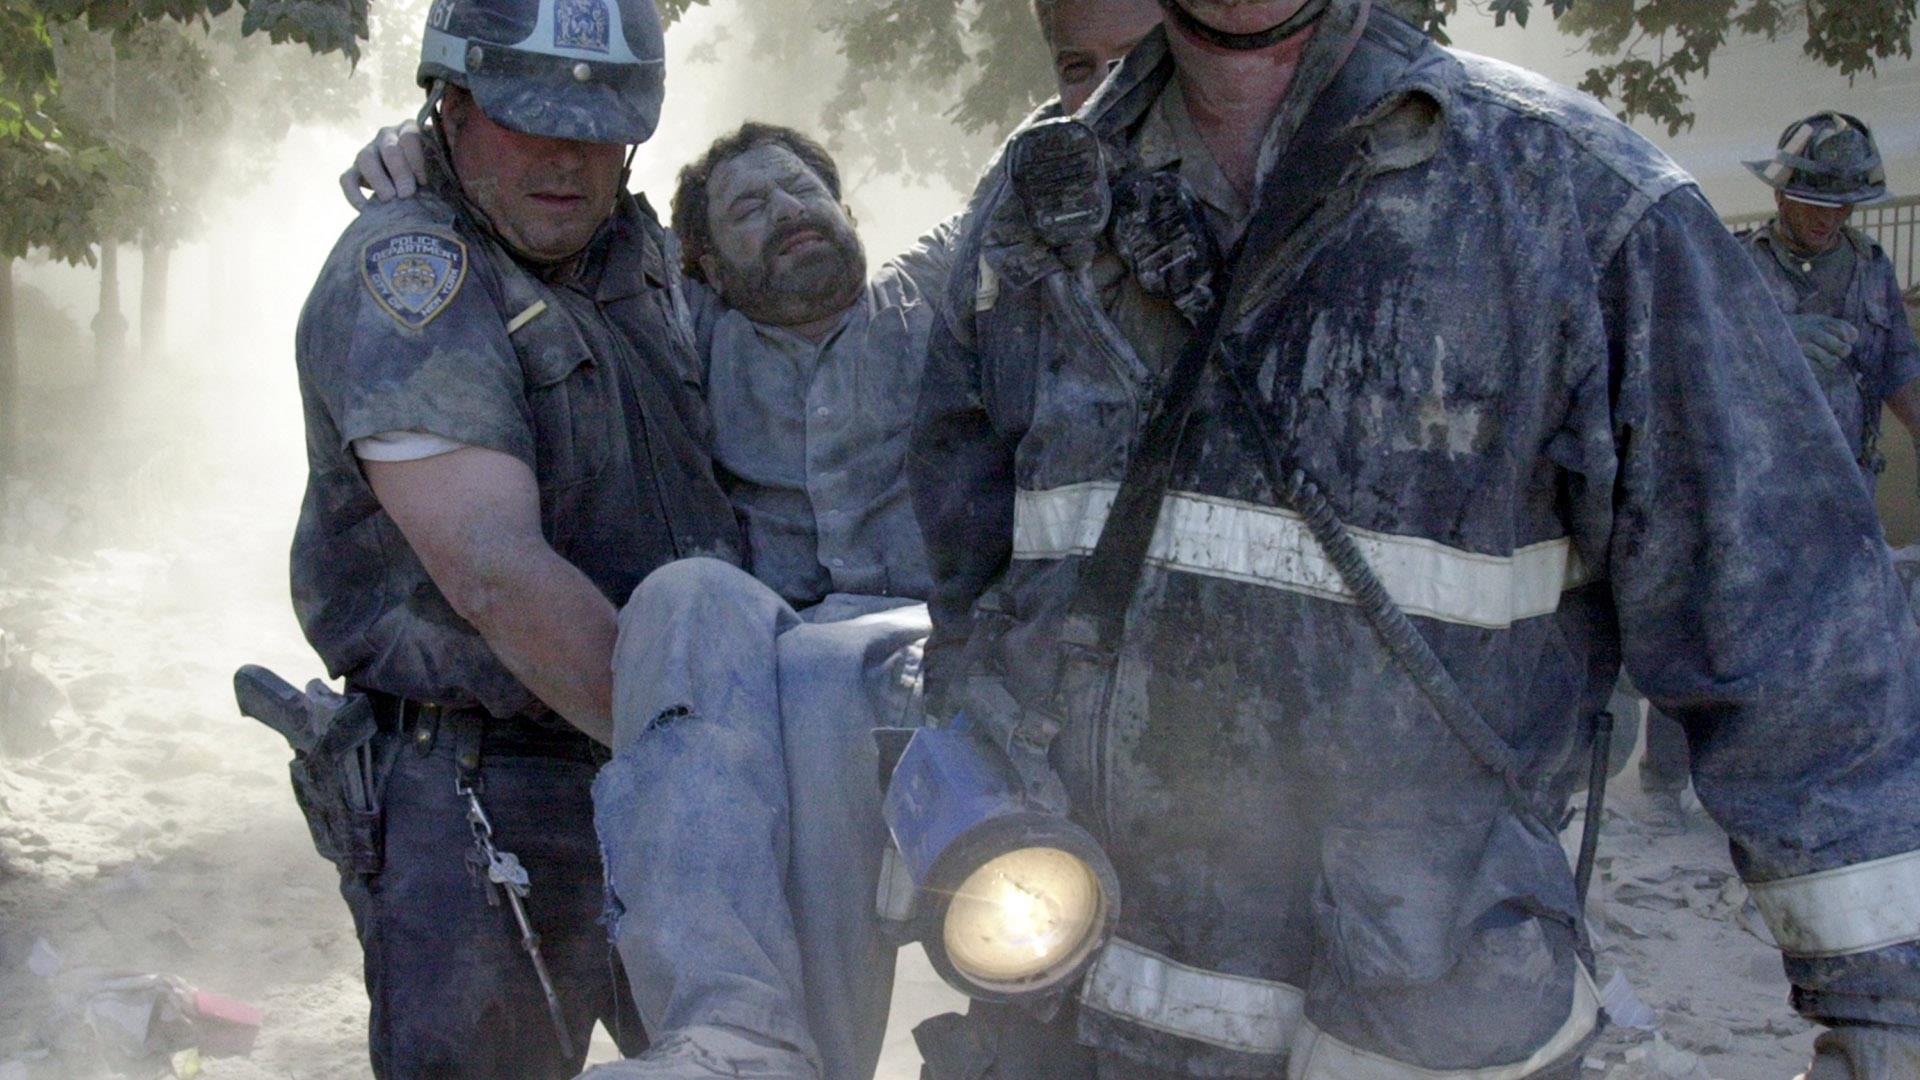 Сколько умерло людей во время теракта. 9.11.2001 Теракт сержант Маклафлин. Теракт в США 2001 башни Близнецы. Башни Близнецы 11 сентября жертвы.